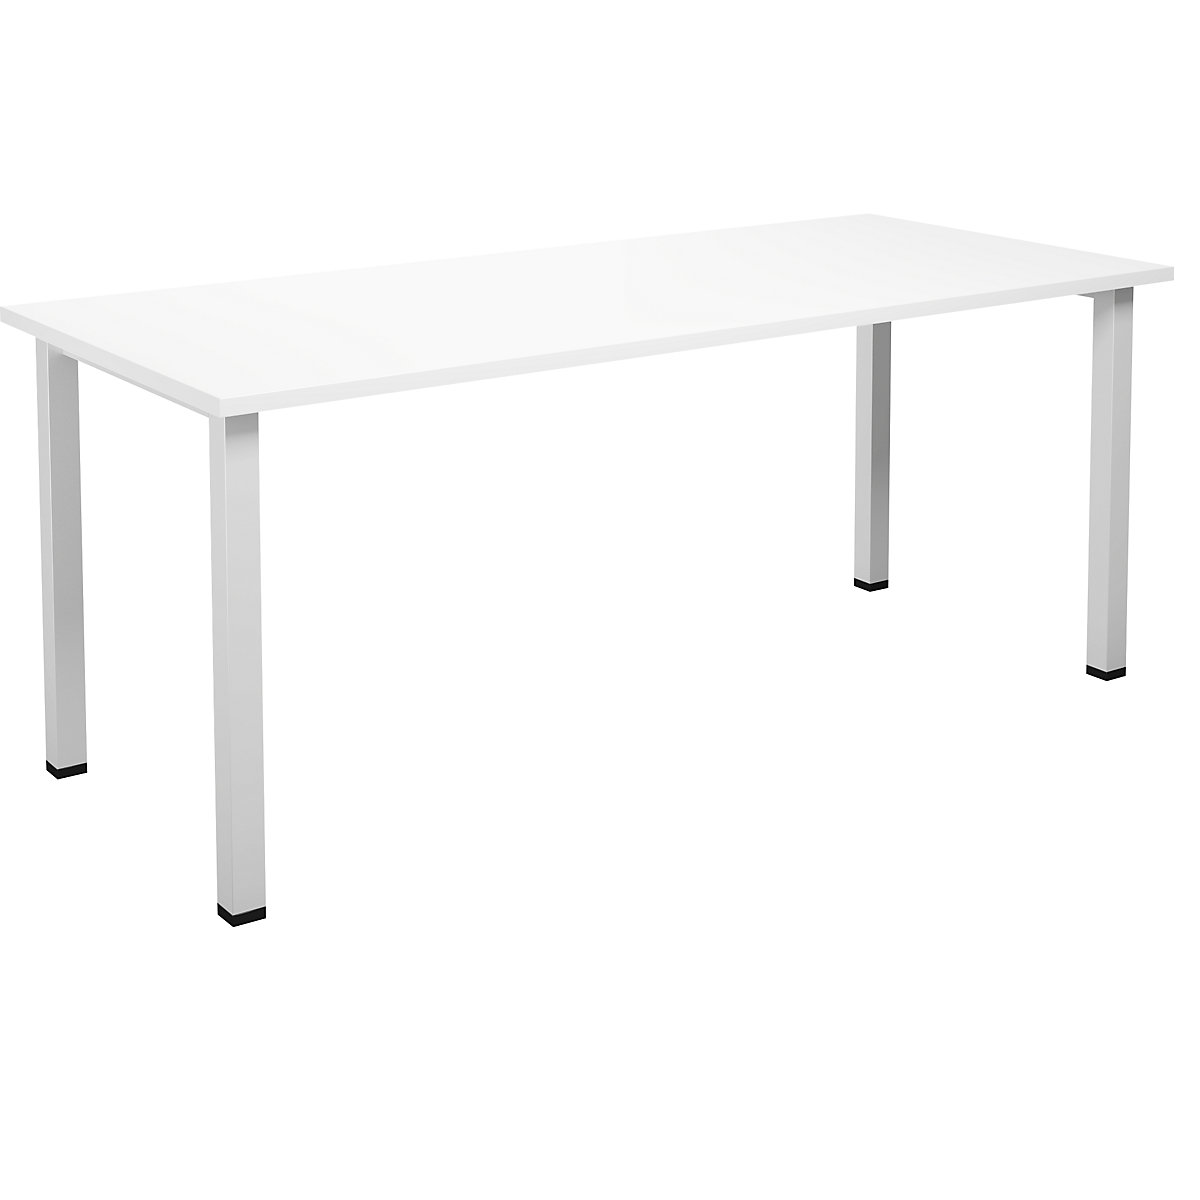 DUO-U multi-purpose desk, straight tabletop, WxD 1800 x 800 mm, white, white-12